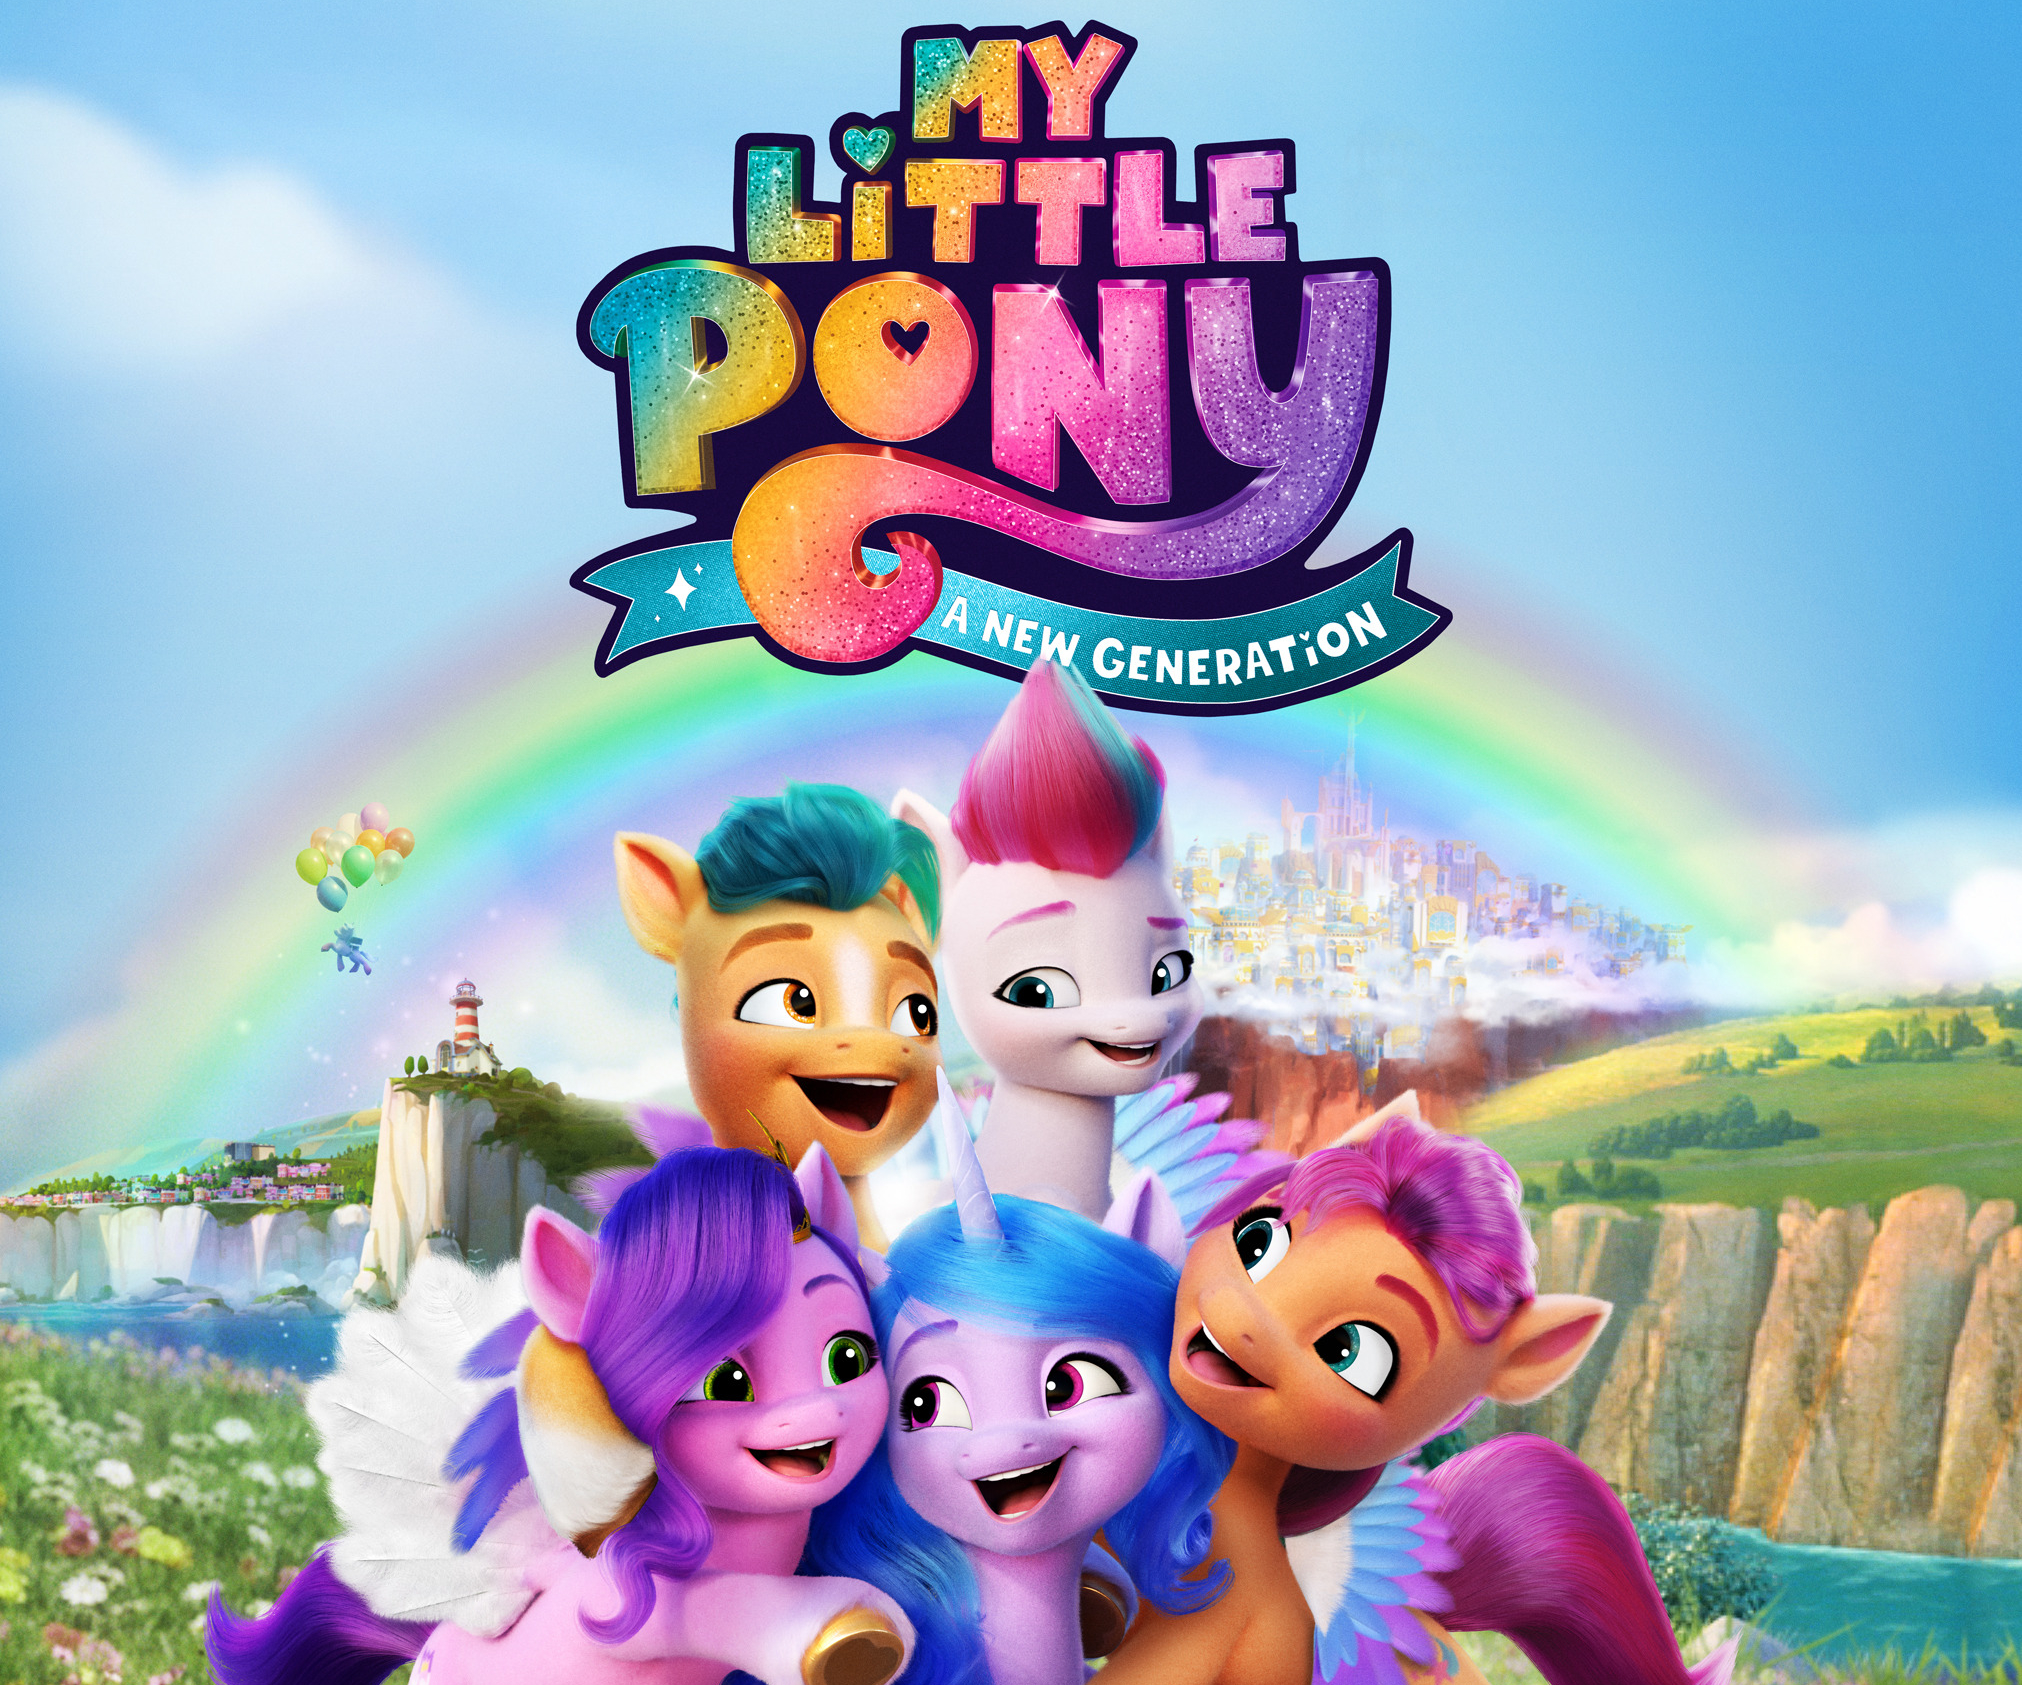 Best My Little Pony: A New Generation Desktop Images